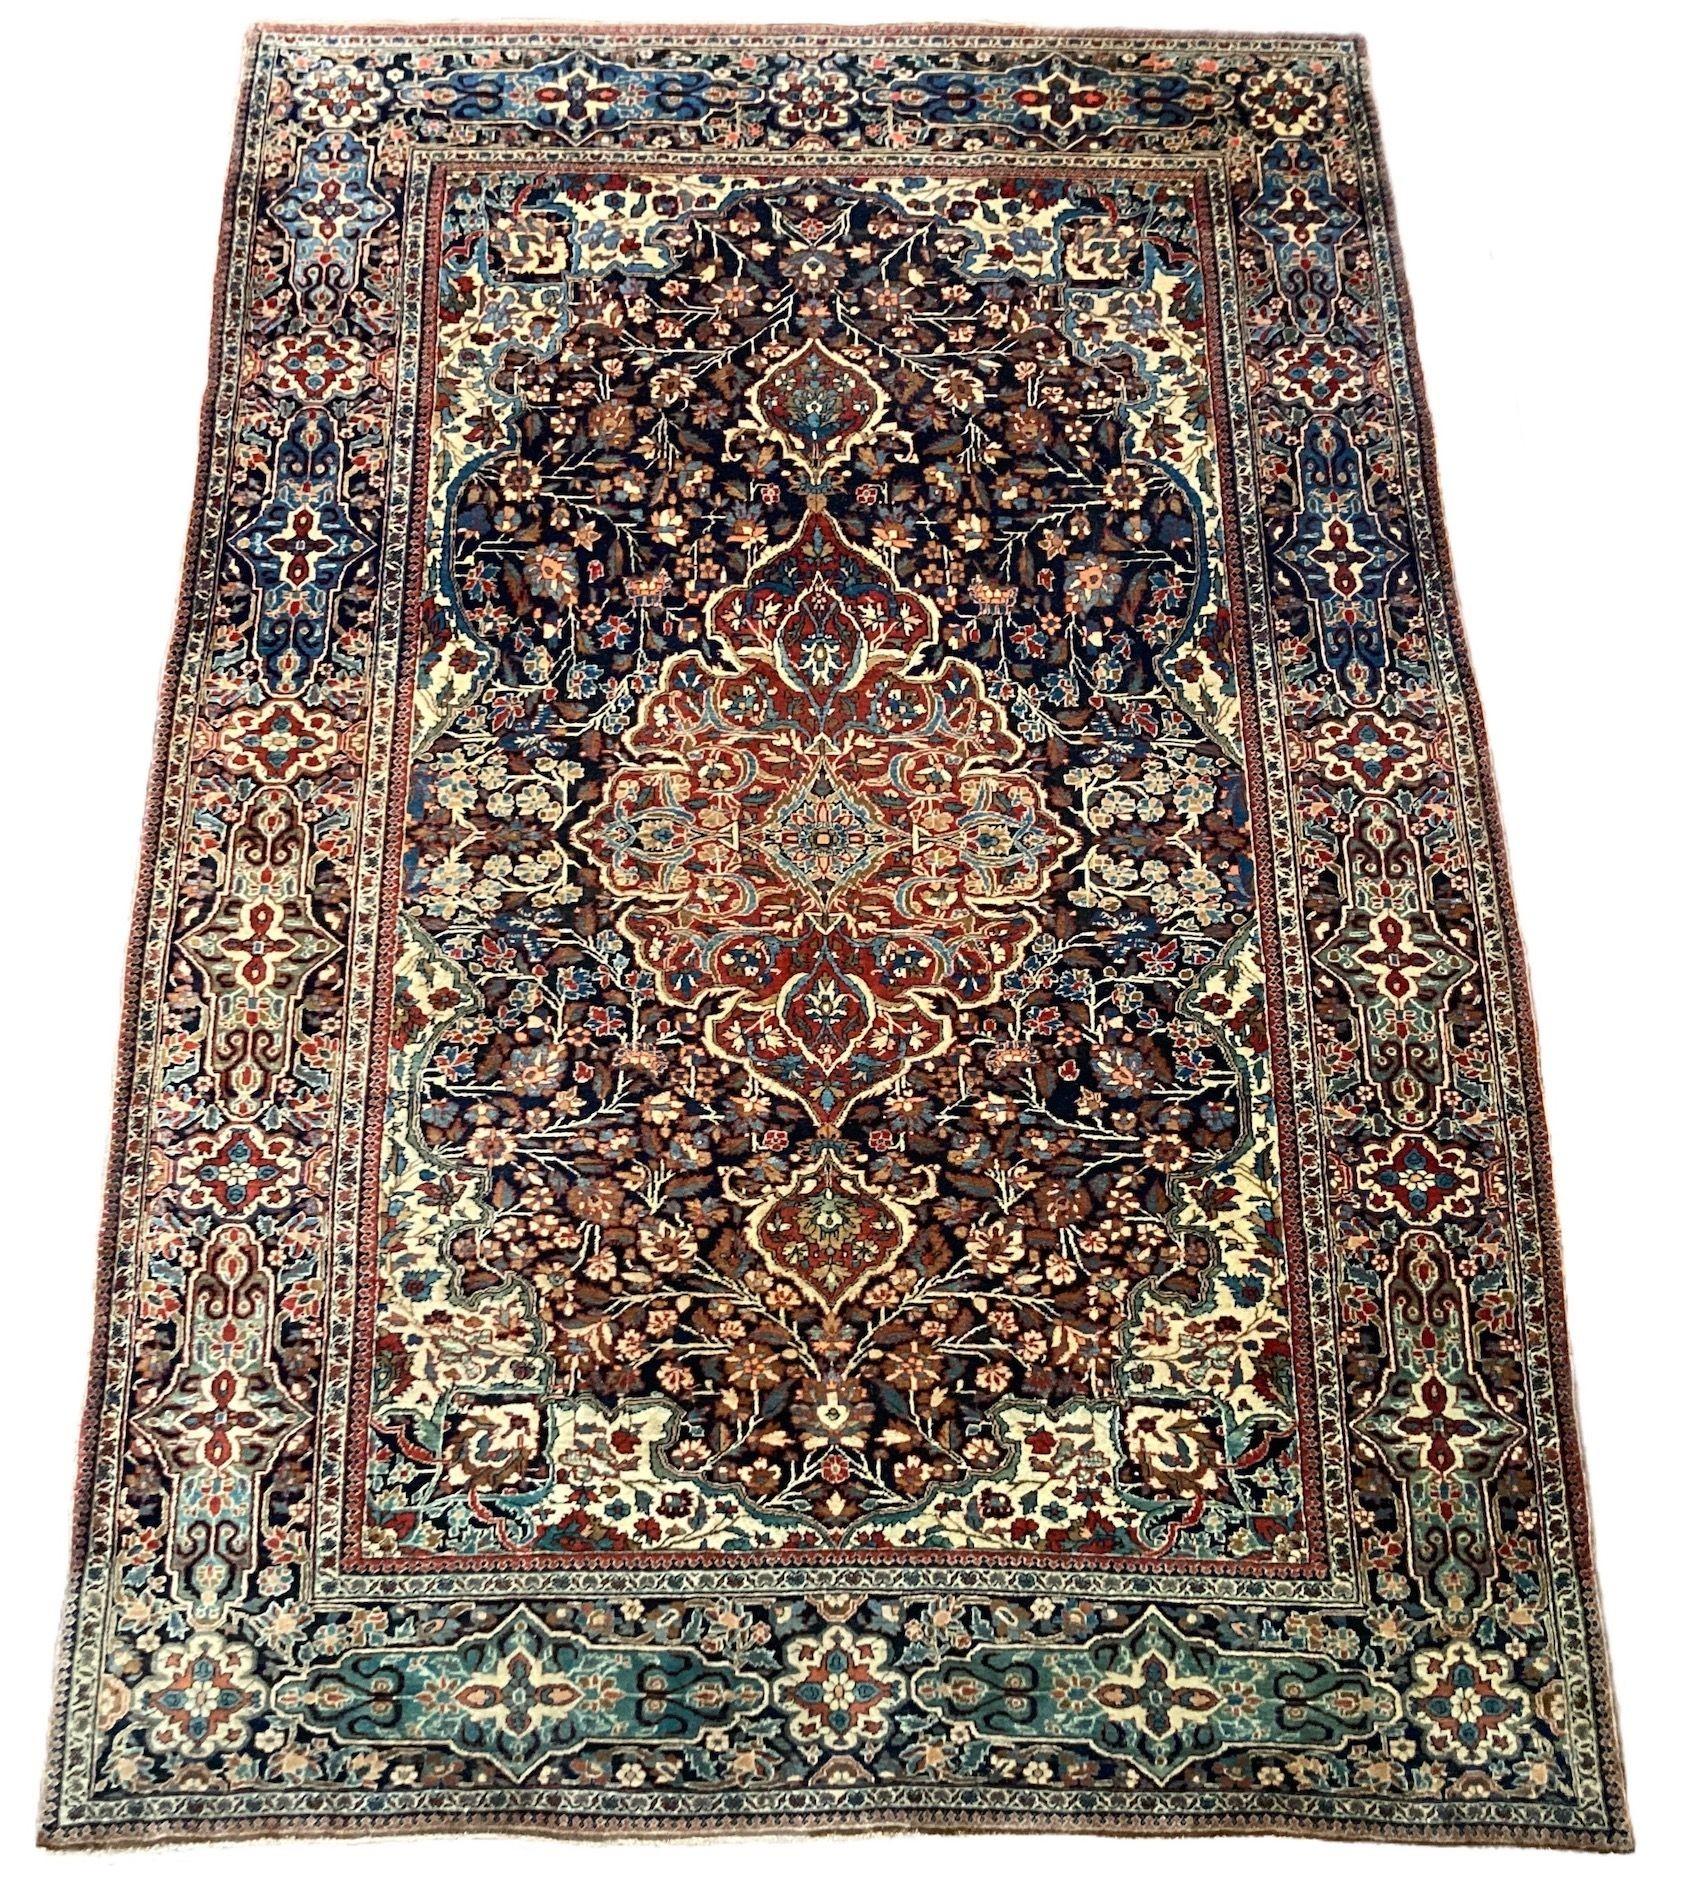 Ein schöner antiker Kashan-Teppich, handgewebt um 1900, mit einem floralen Muster auf einem tiefen indigoblauen Feld um ein elegantes Terrakotta-Medaillon und eine ähnliche Bordüre. Tolle Sekundärfarben, vor allem das helle Grün und Gold im gesamten